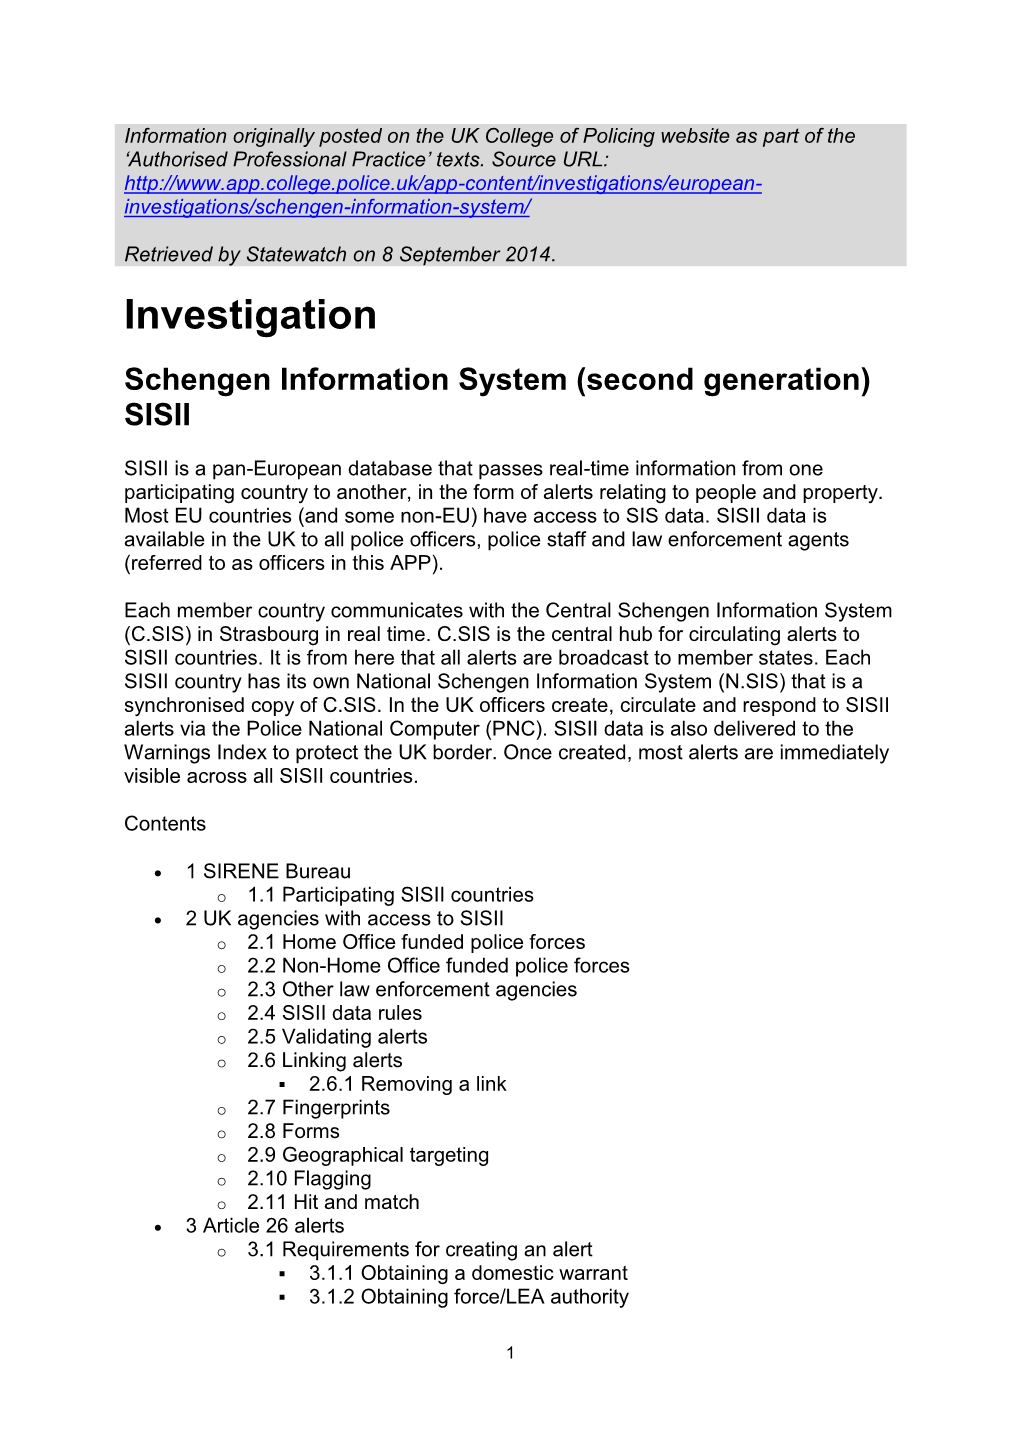 Investigations/European- Investigations/Schengen-Information-System